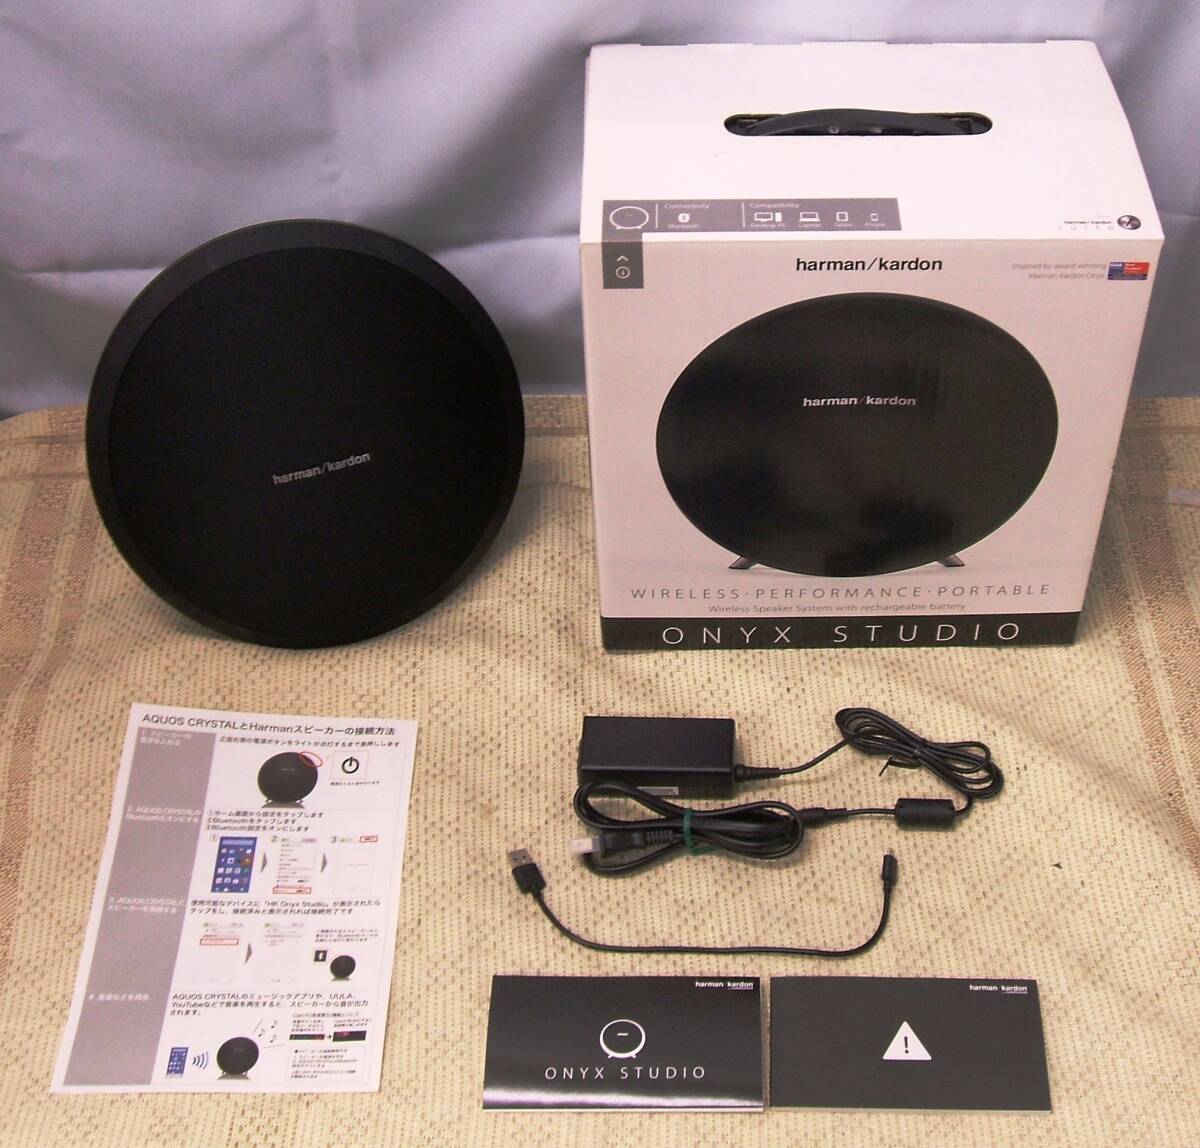 harman/kardon 円形Bluetoothスピーカー「ONYX STUDIO」●ワイヤレススピーカー ハーマンカードン ブラック オーディオ機器